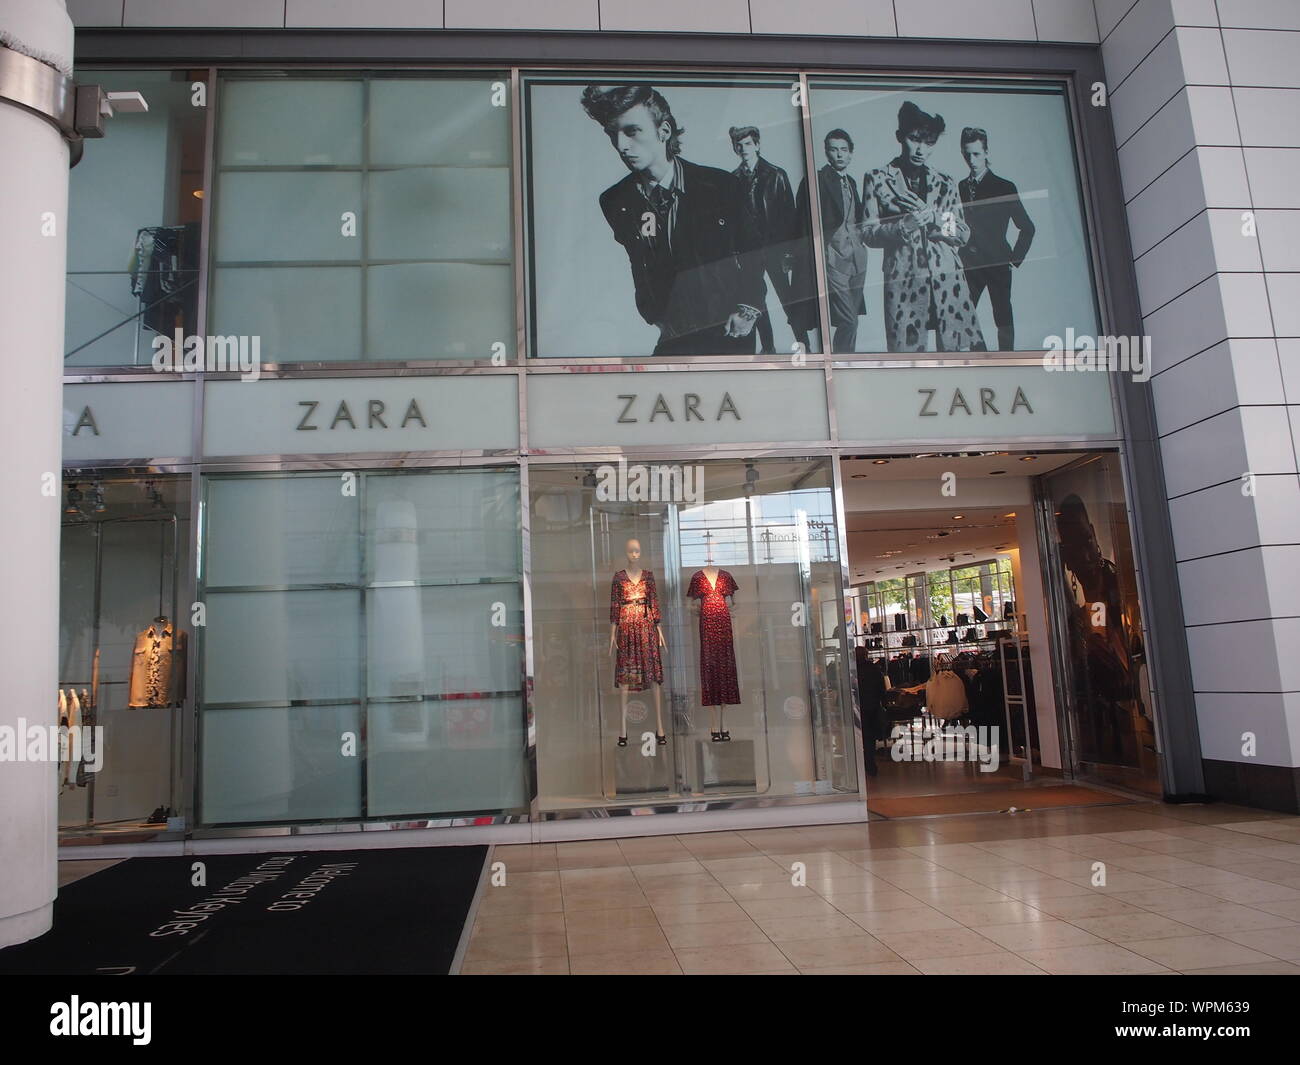 Zara store in Intu shopping centre 